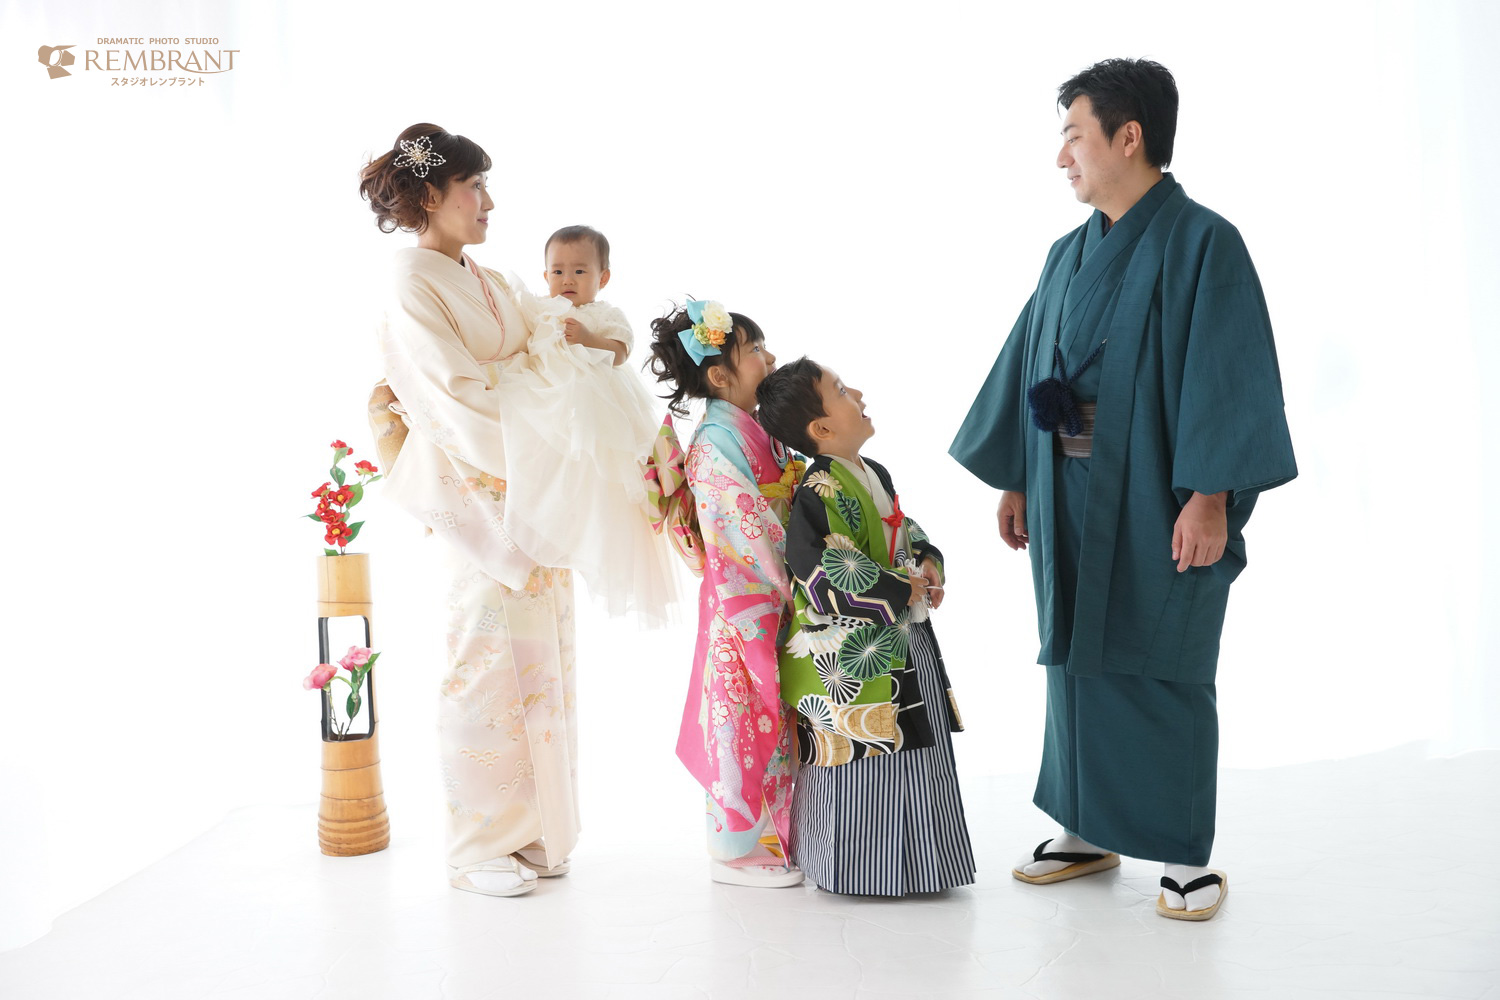 七五三の家族写真は 年賀状 にも使えます 京都のおしゃれな写真館 スタジオレンブラント